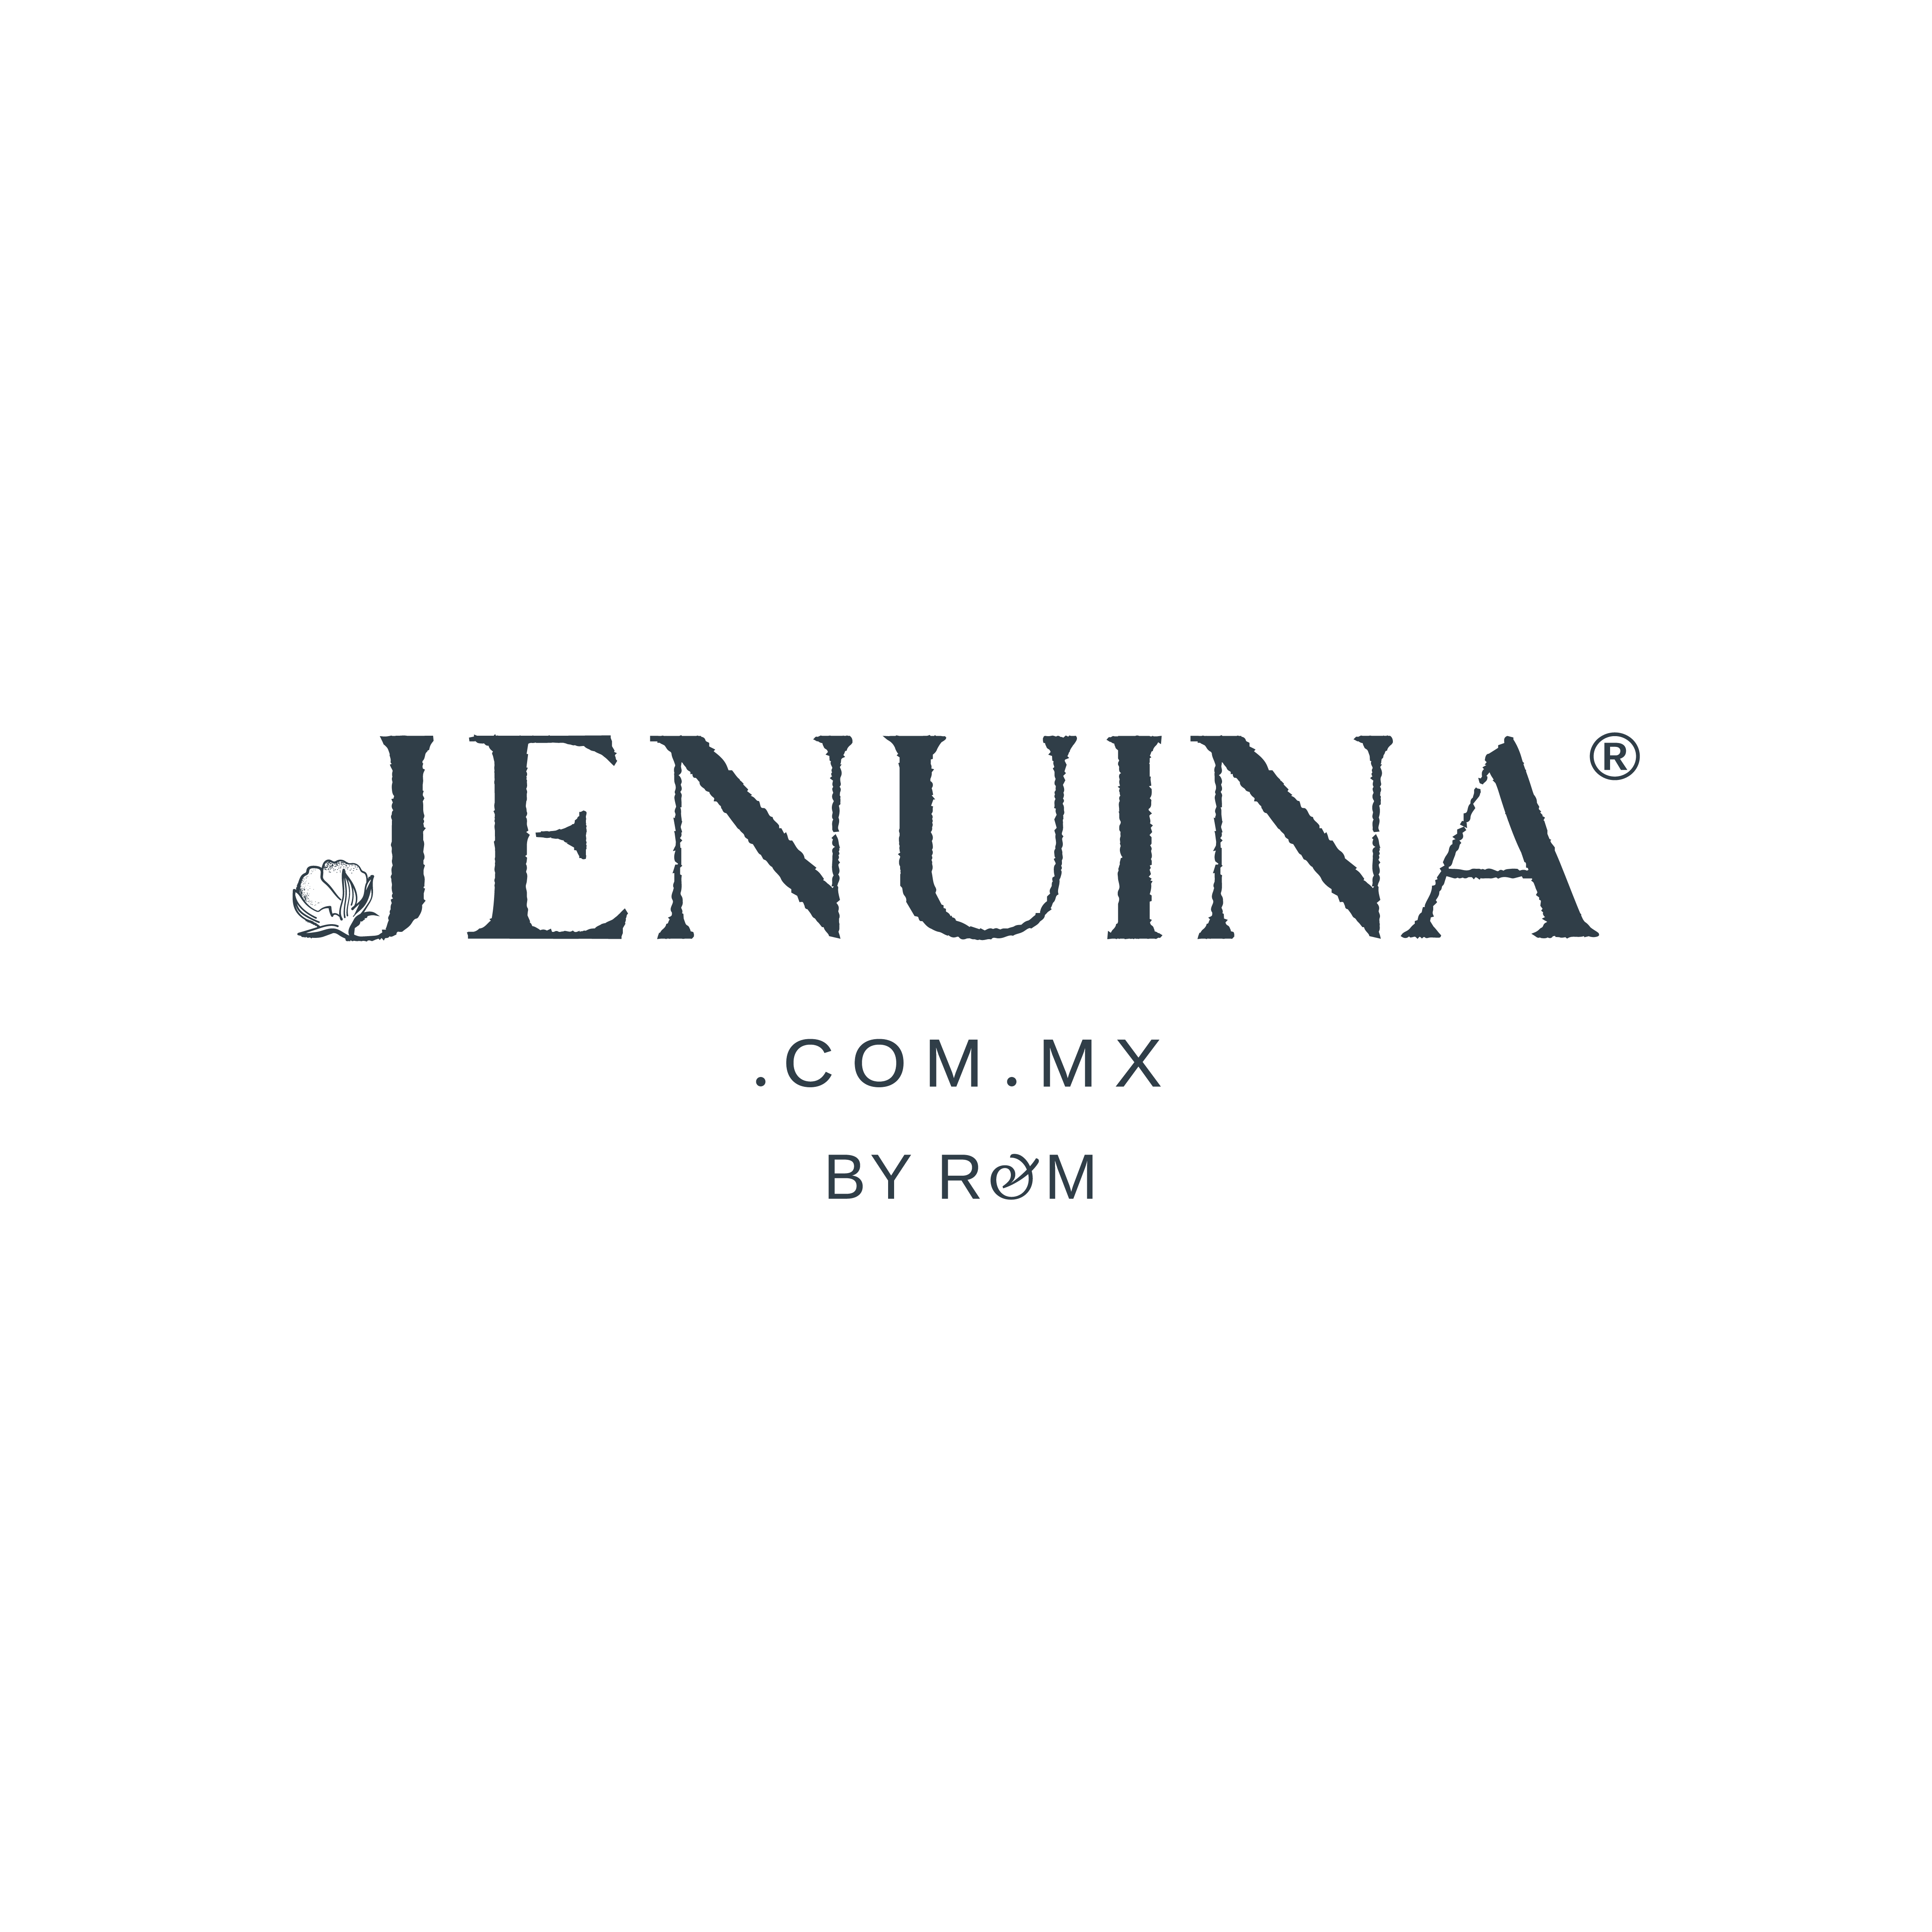 JENUINA.COM.MX